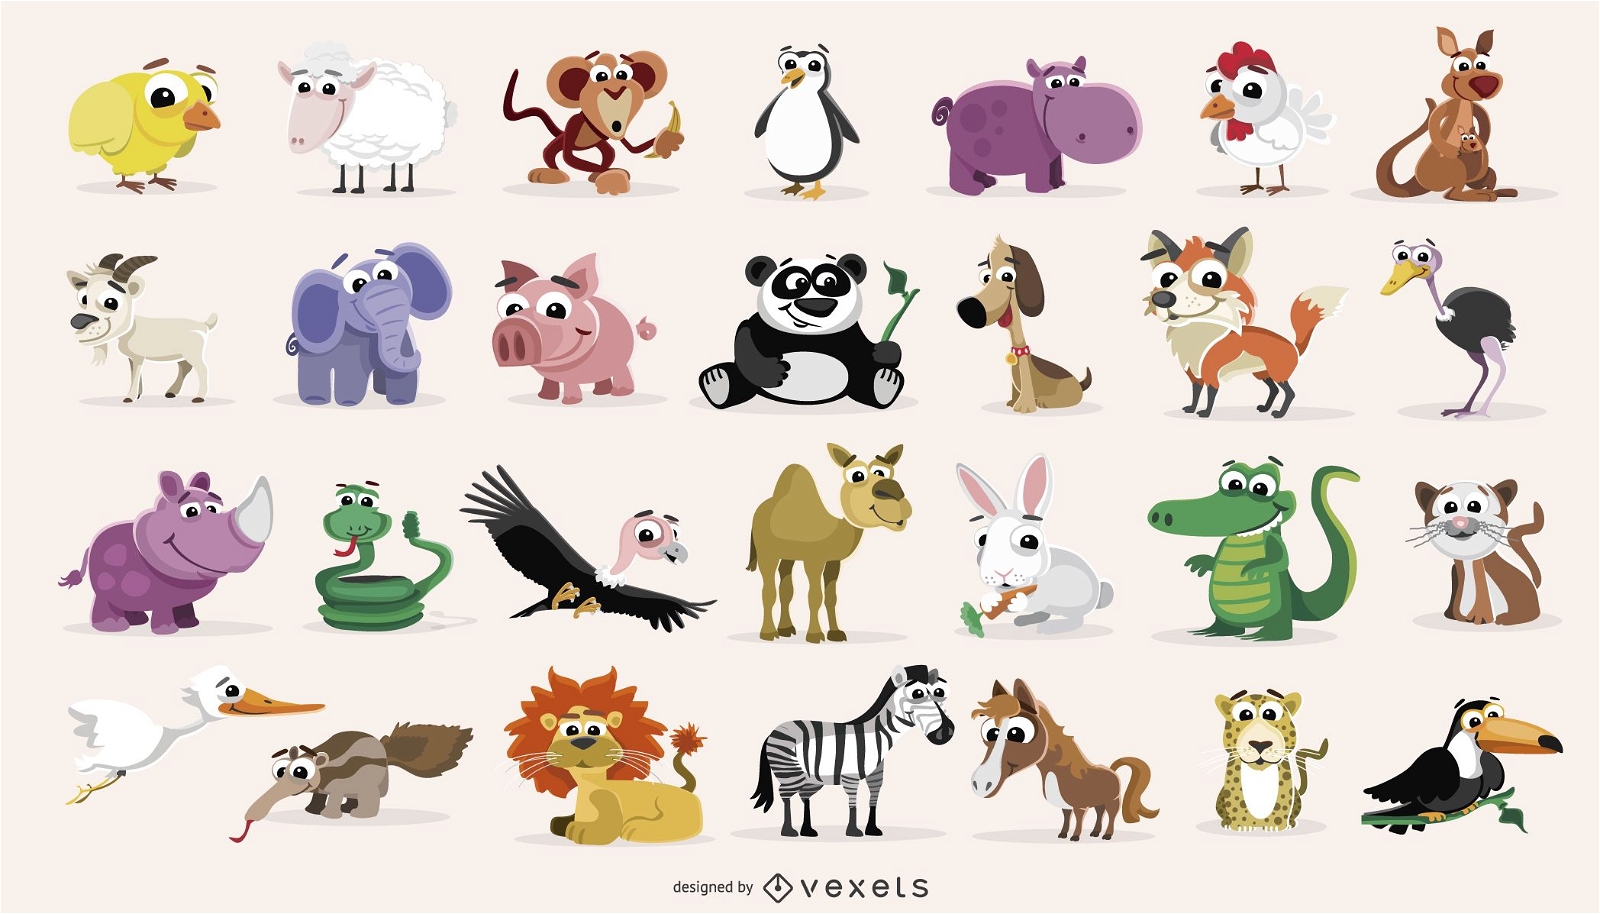 Pack de dibujos animados de animales dom?sticos y salvajes.